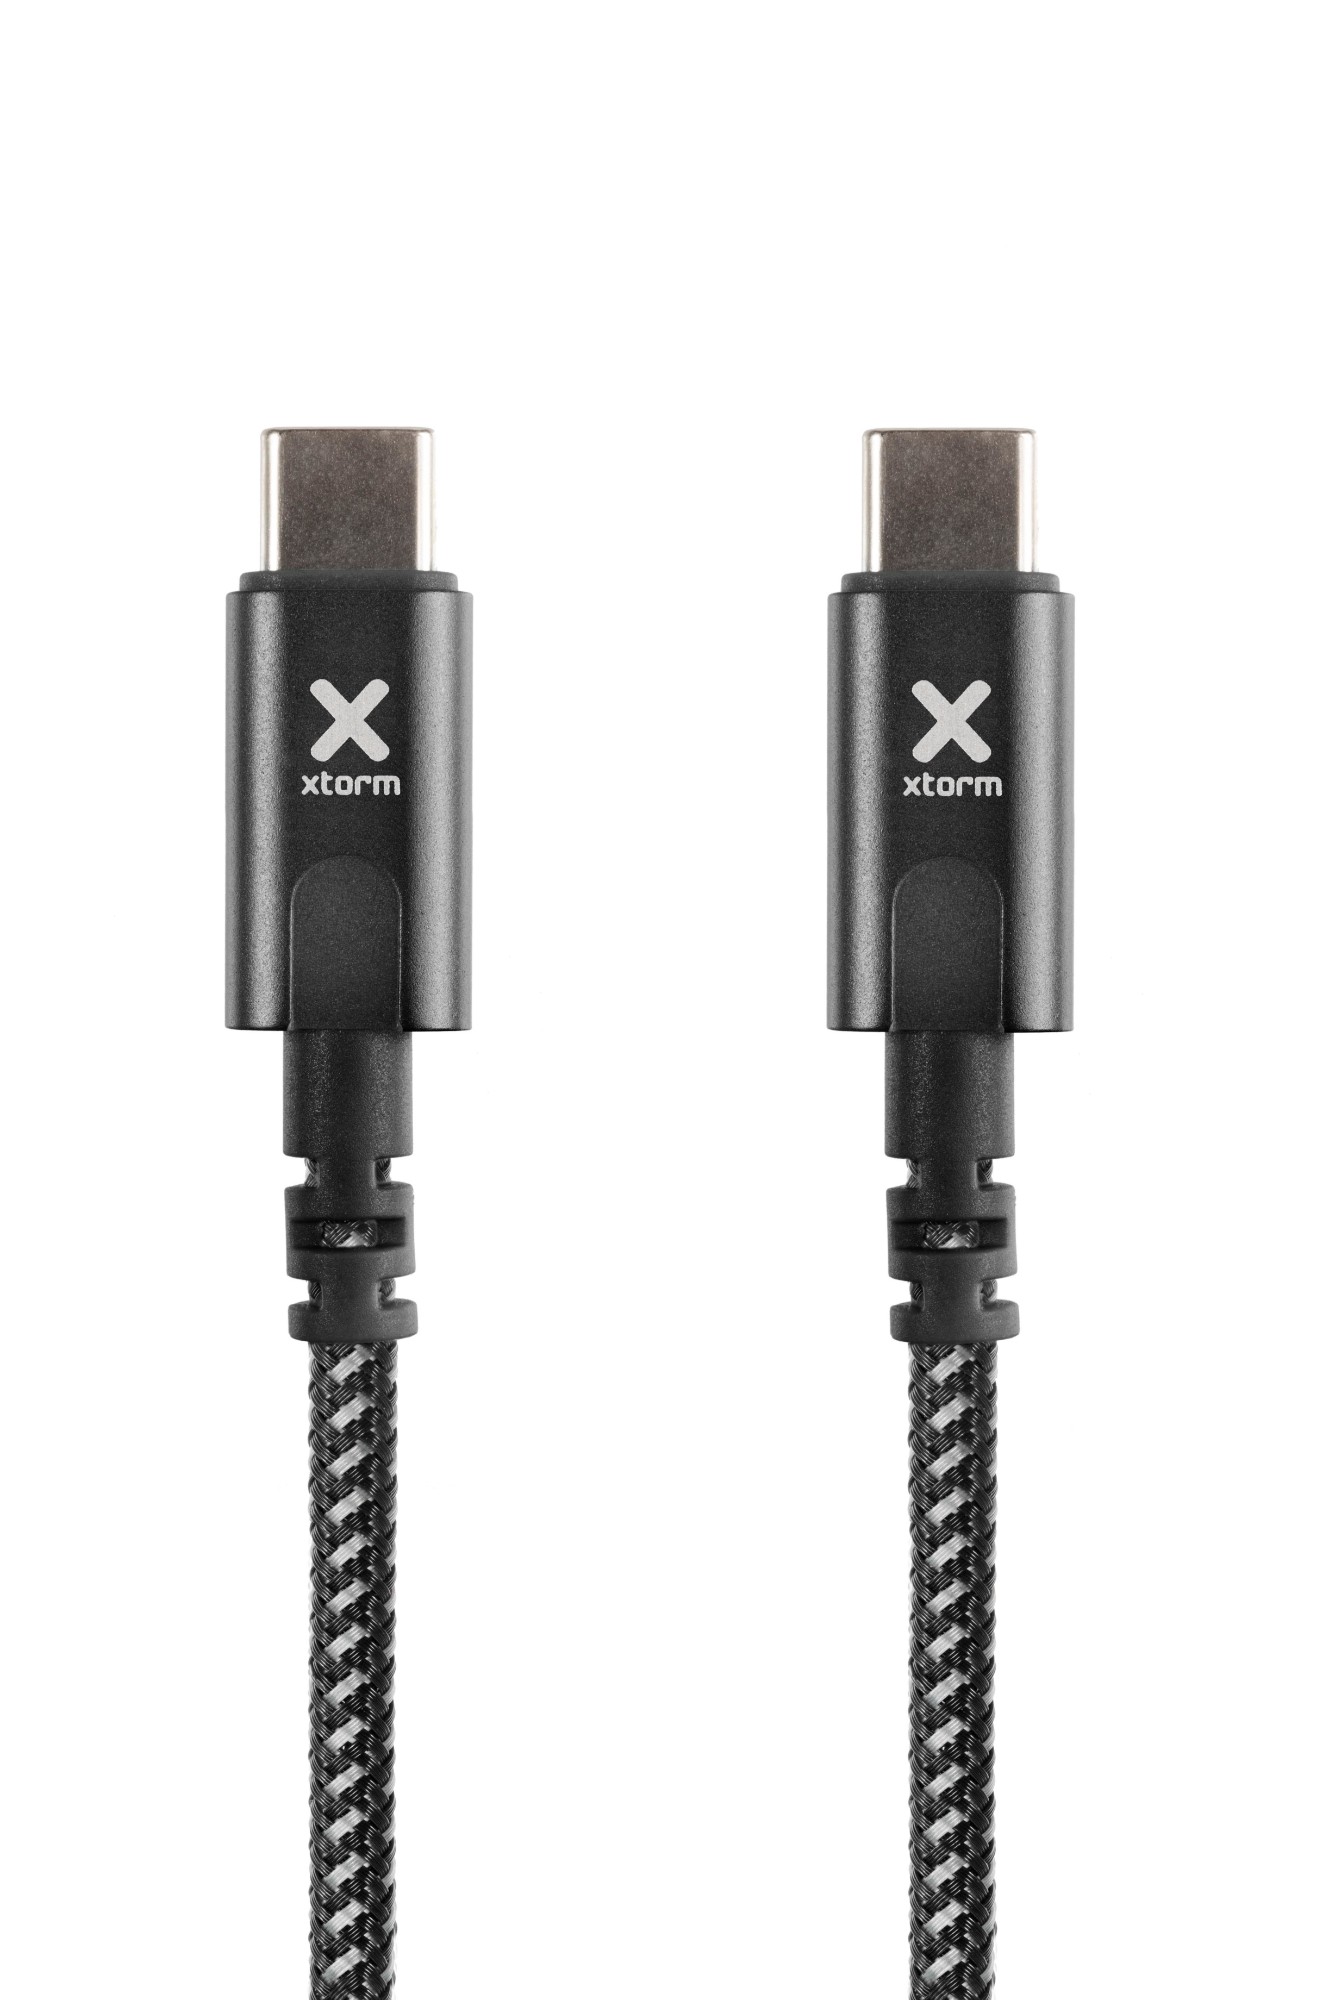 Photos - Cable (video, audio, USB) Xtorm Original USB-C PD cable (2m) Black CX2081 